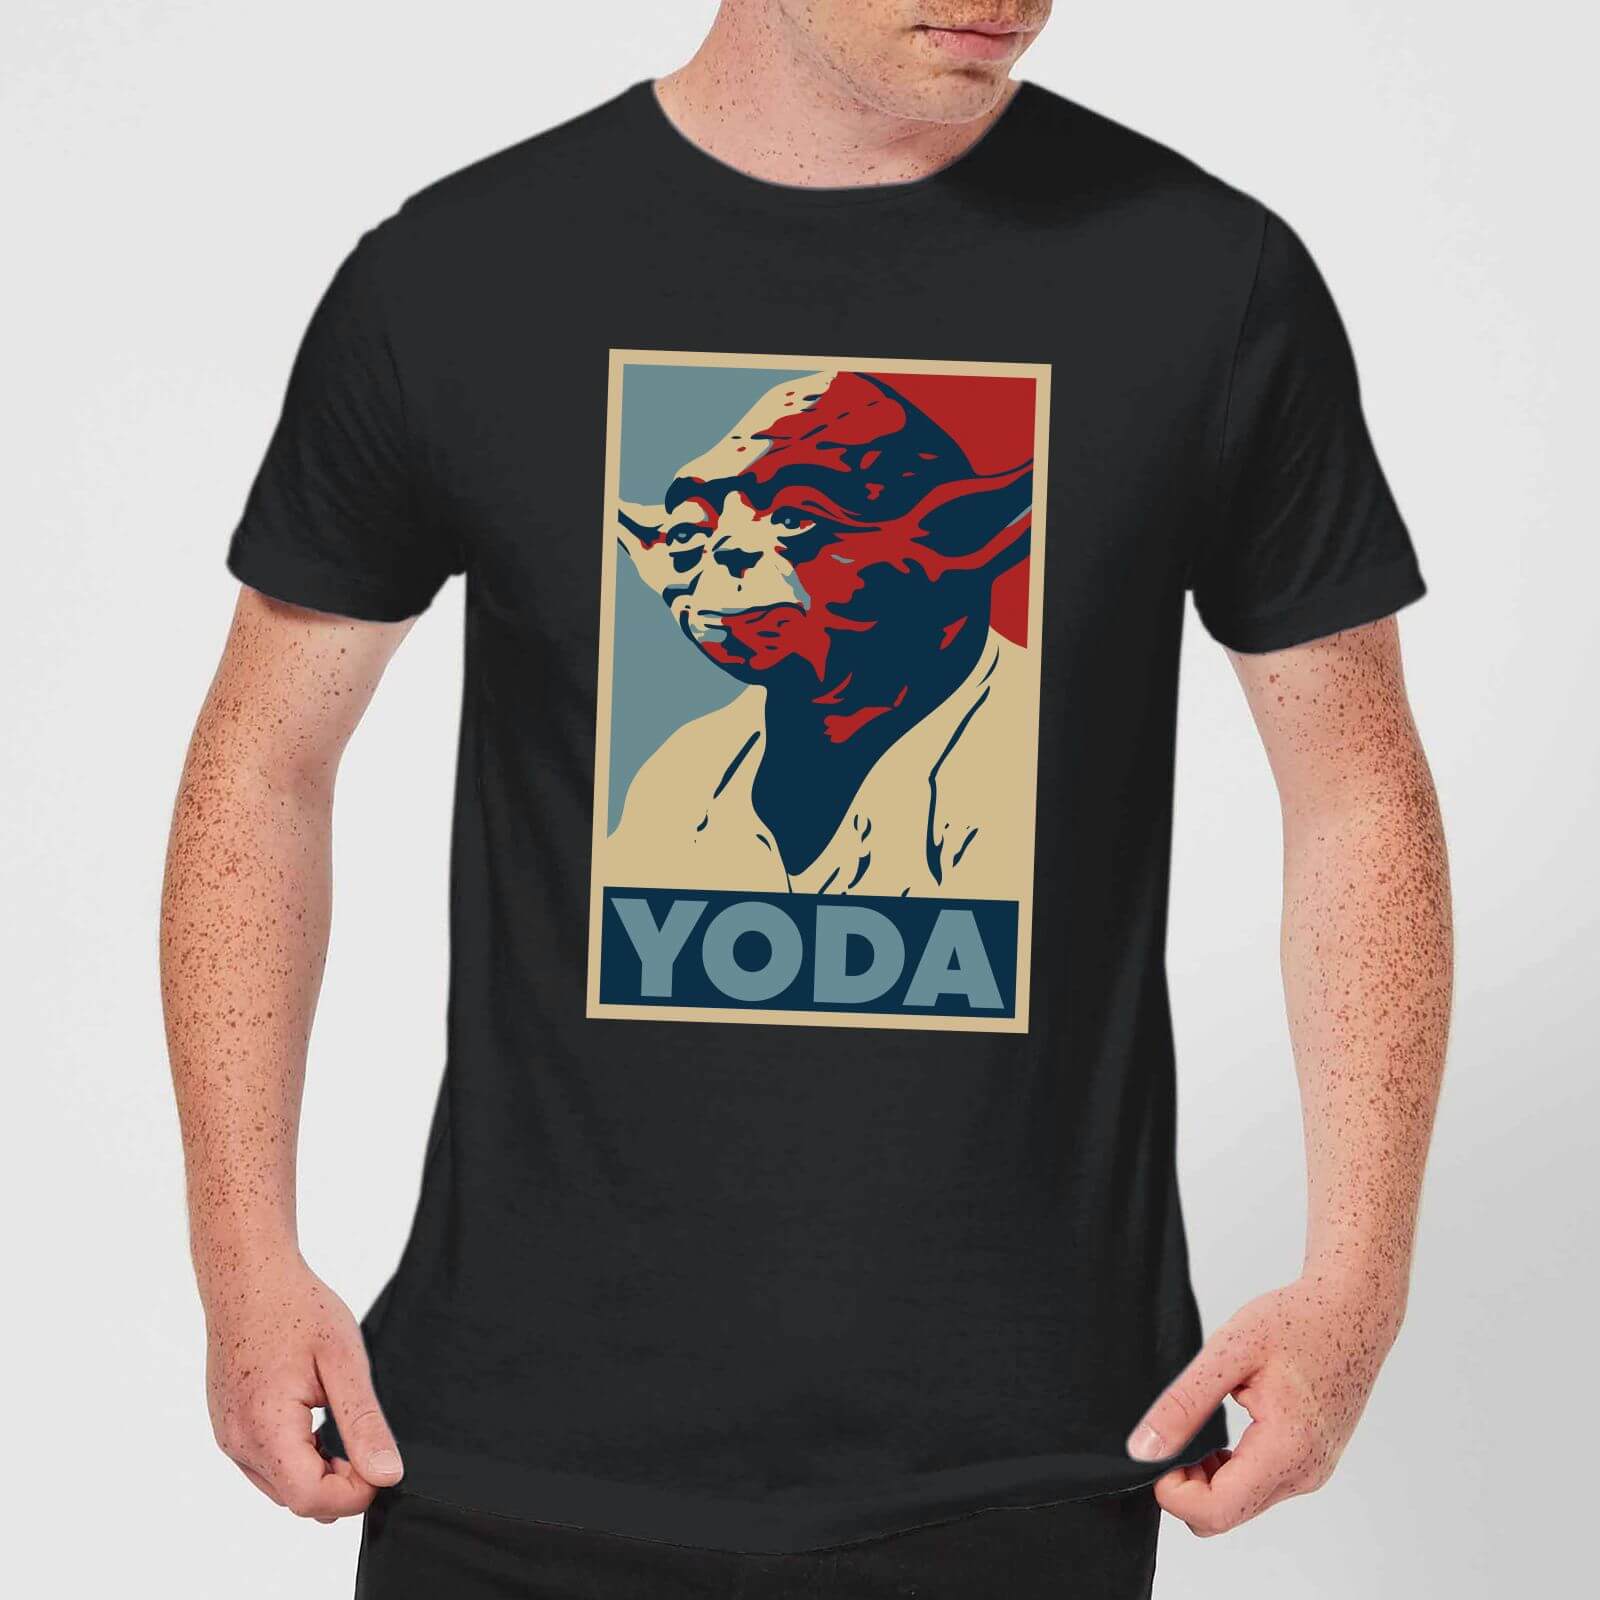 yoda shirt